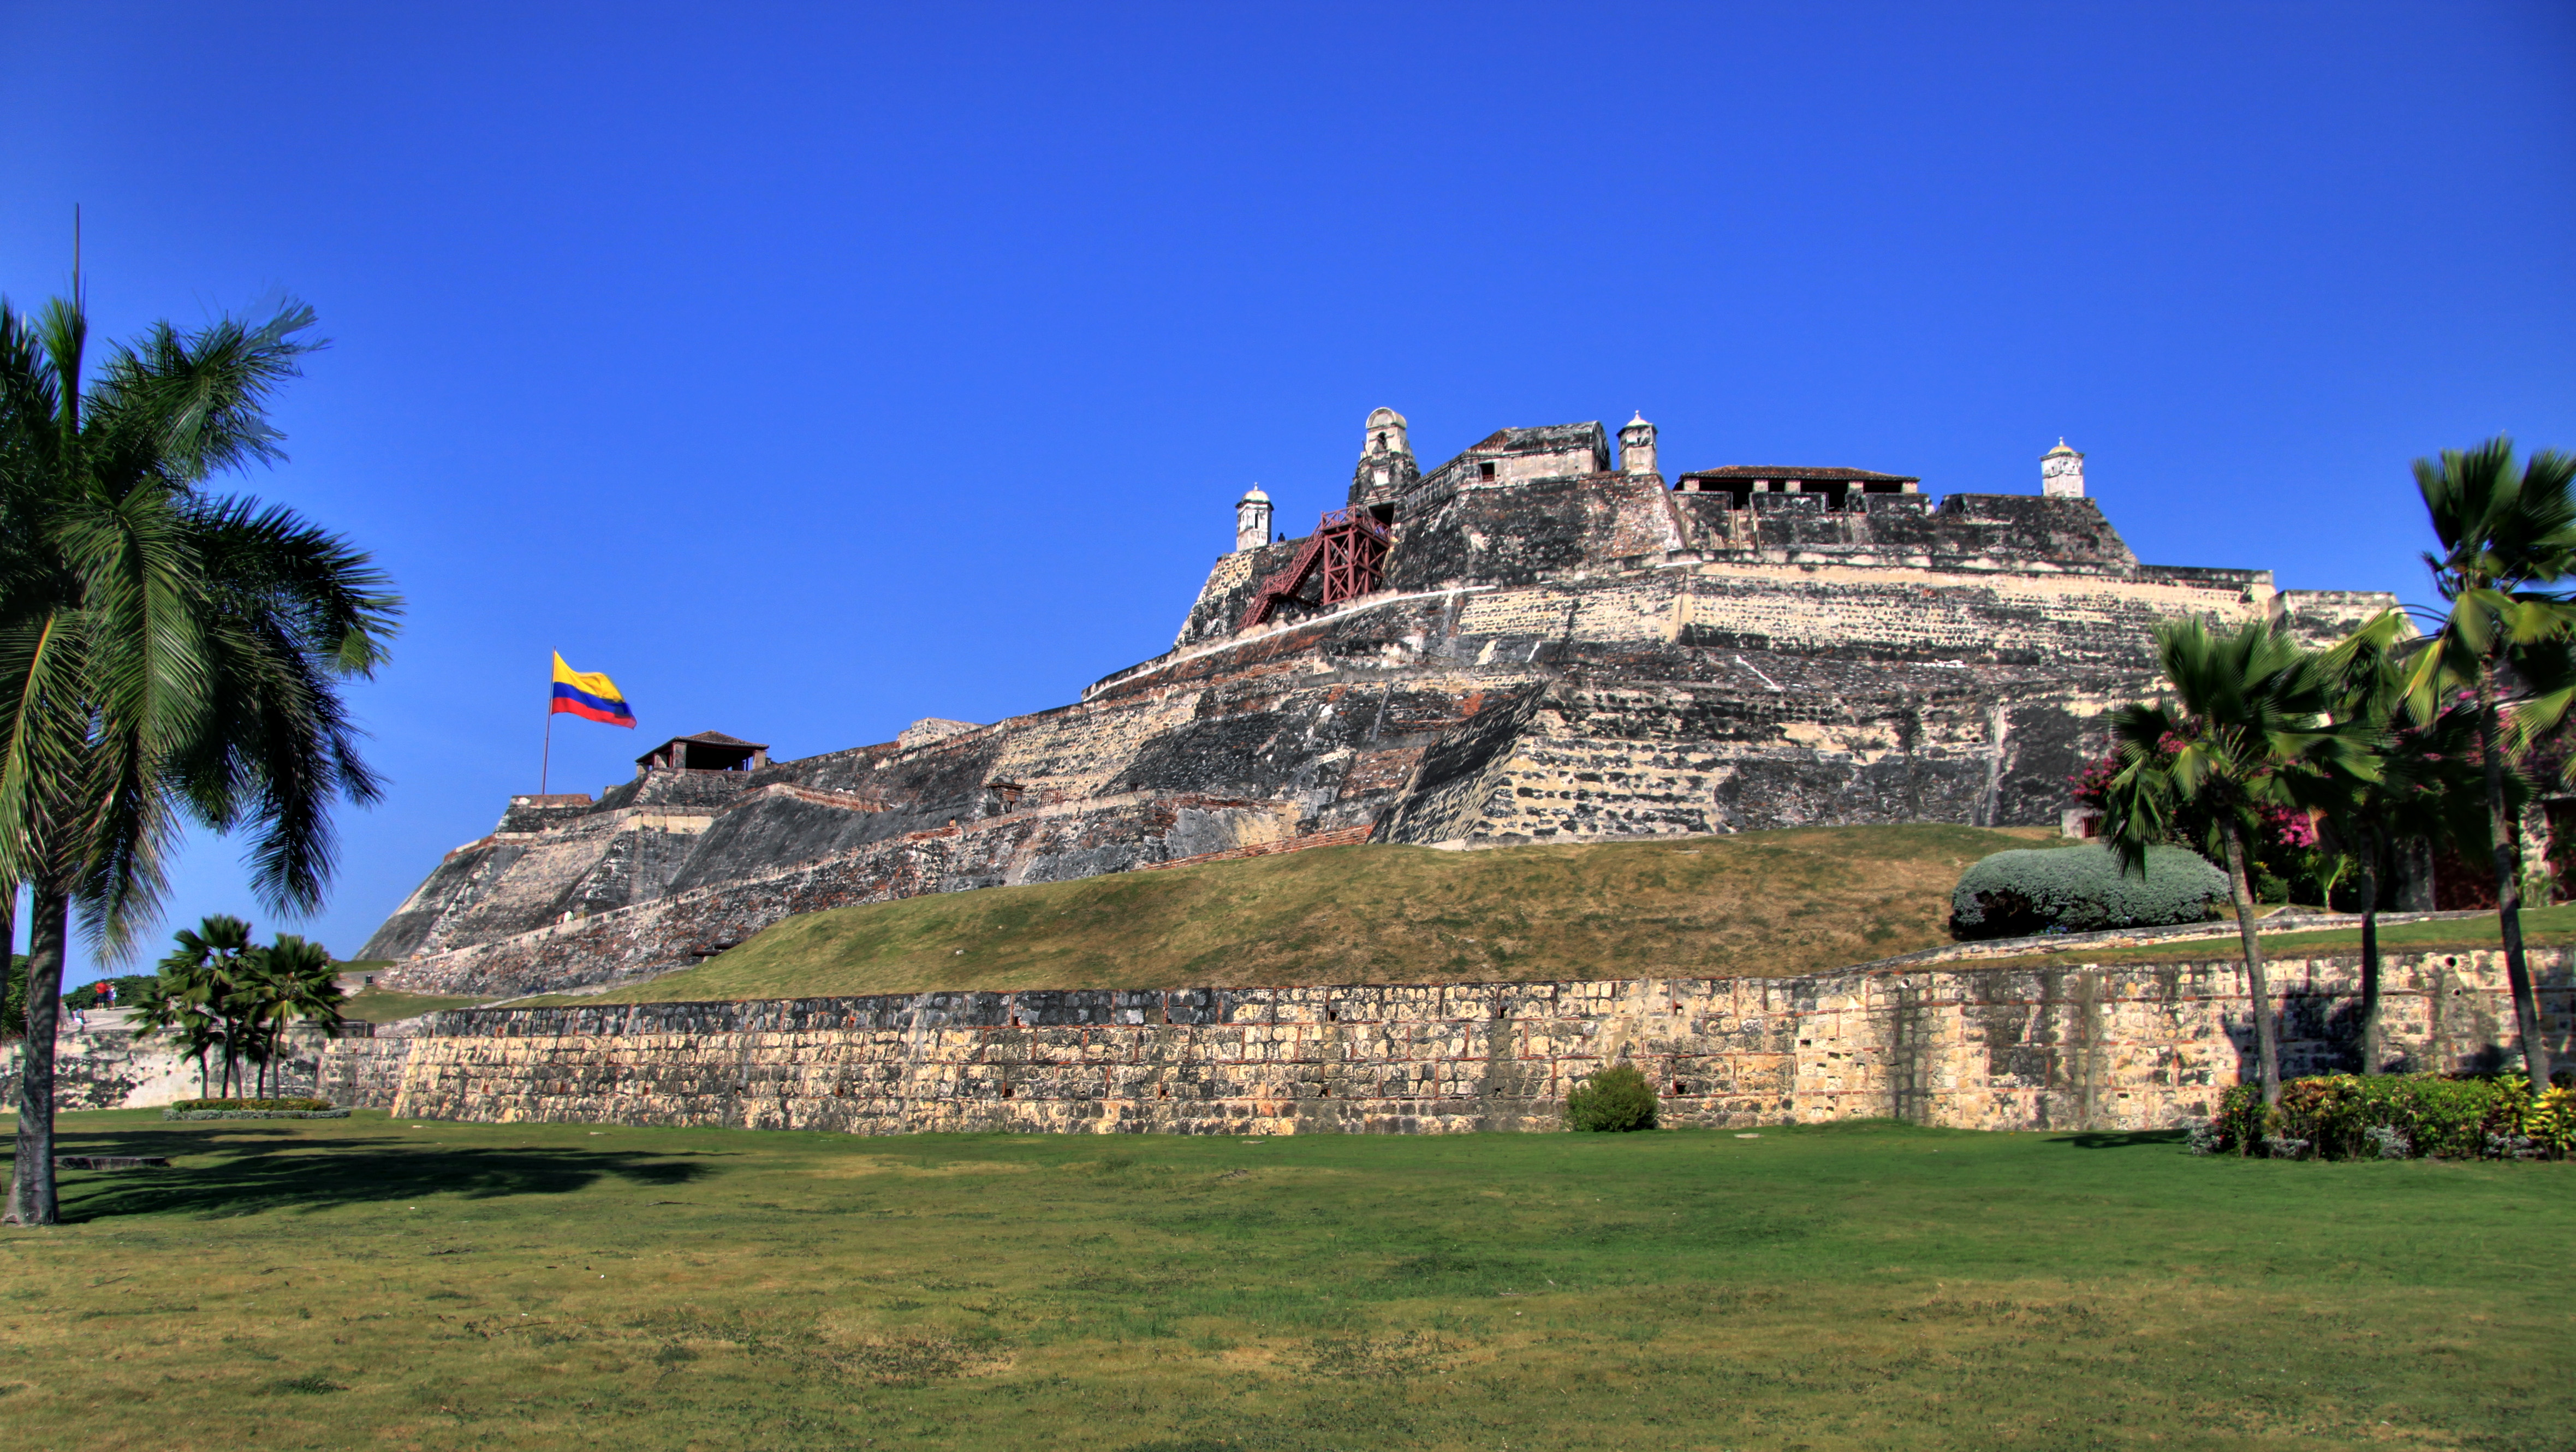 El Castillo San Felipe de Barajas está situado sobre un cerro llamado San Lázaro y fue construido en 1657 durante la época virreinal española.